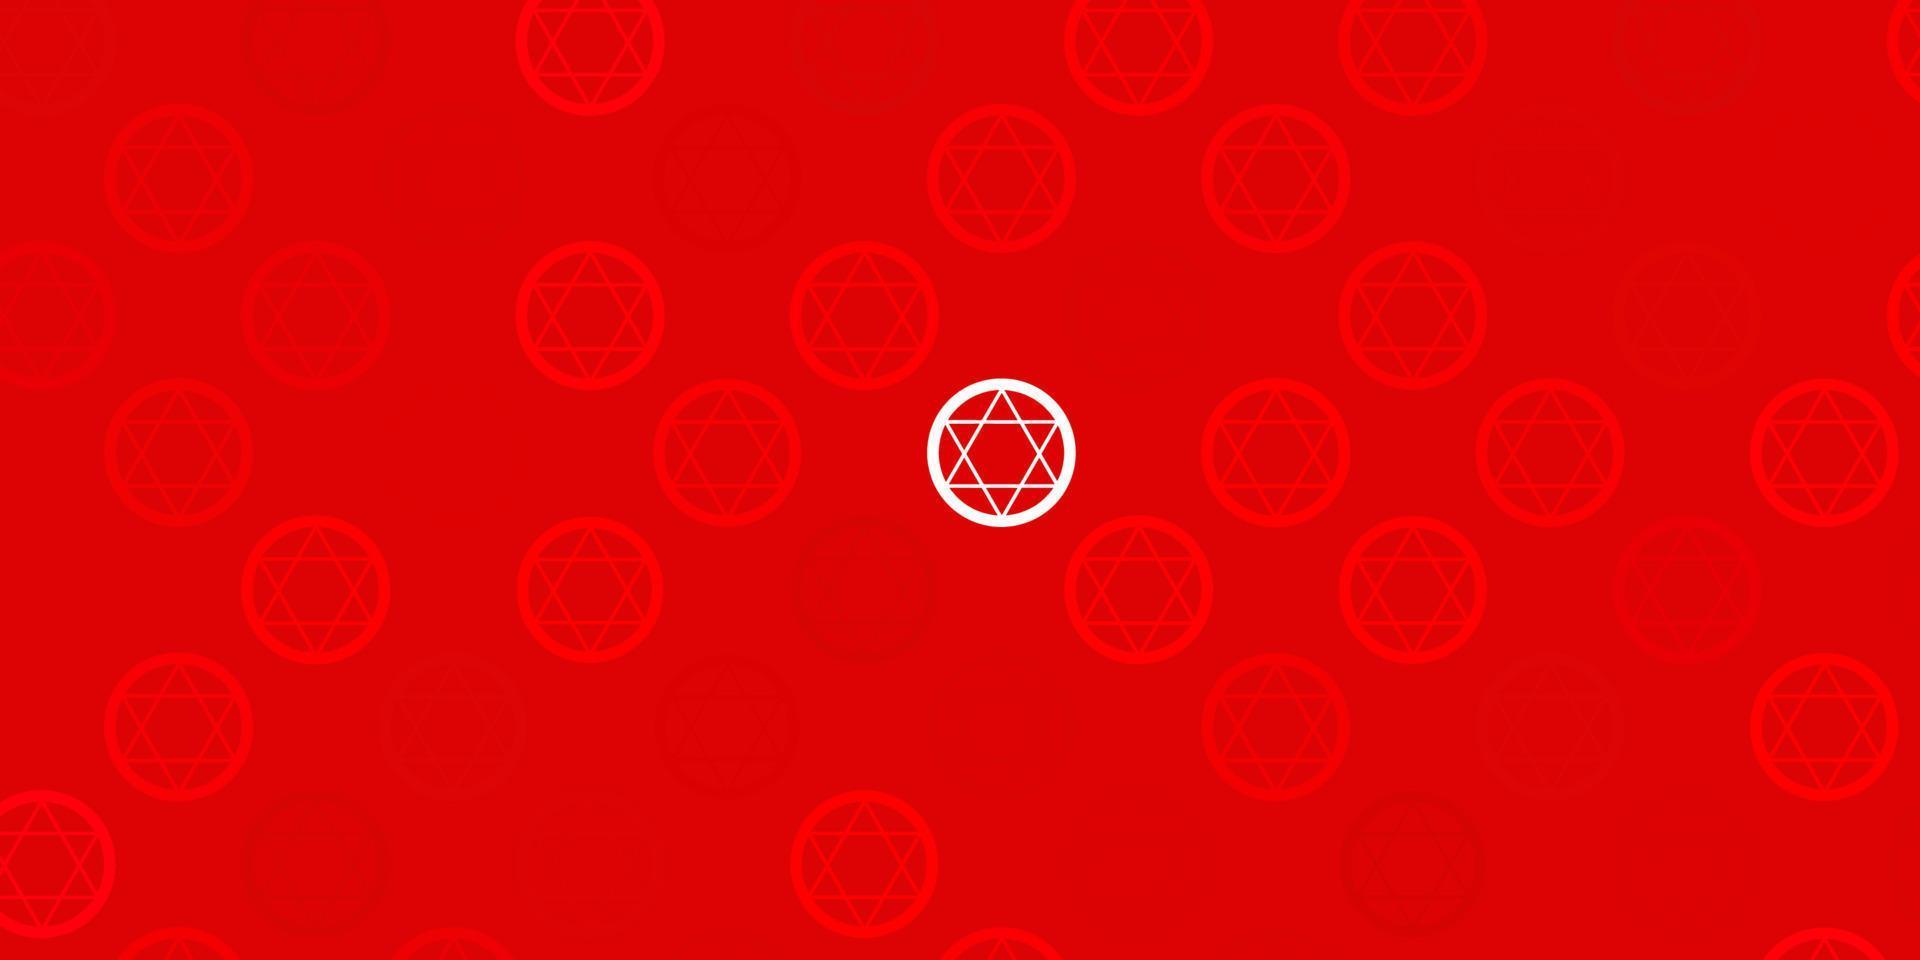 ljusrosa, röd vektorstruktur med religionssymboler. vektor